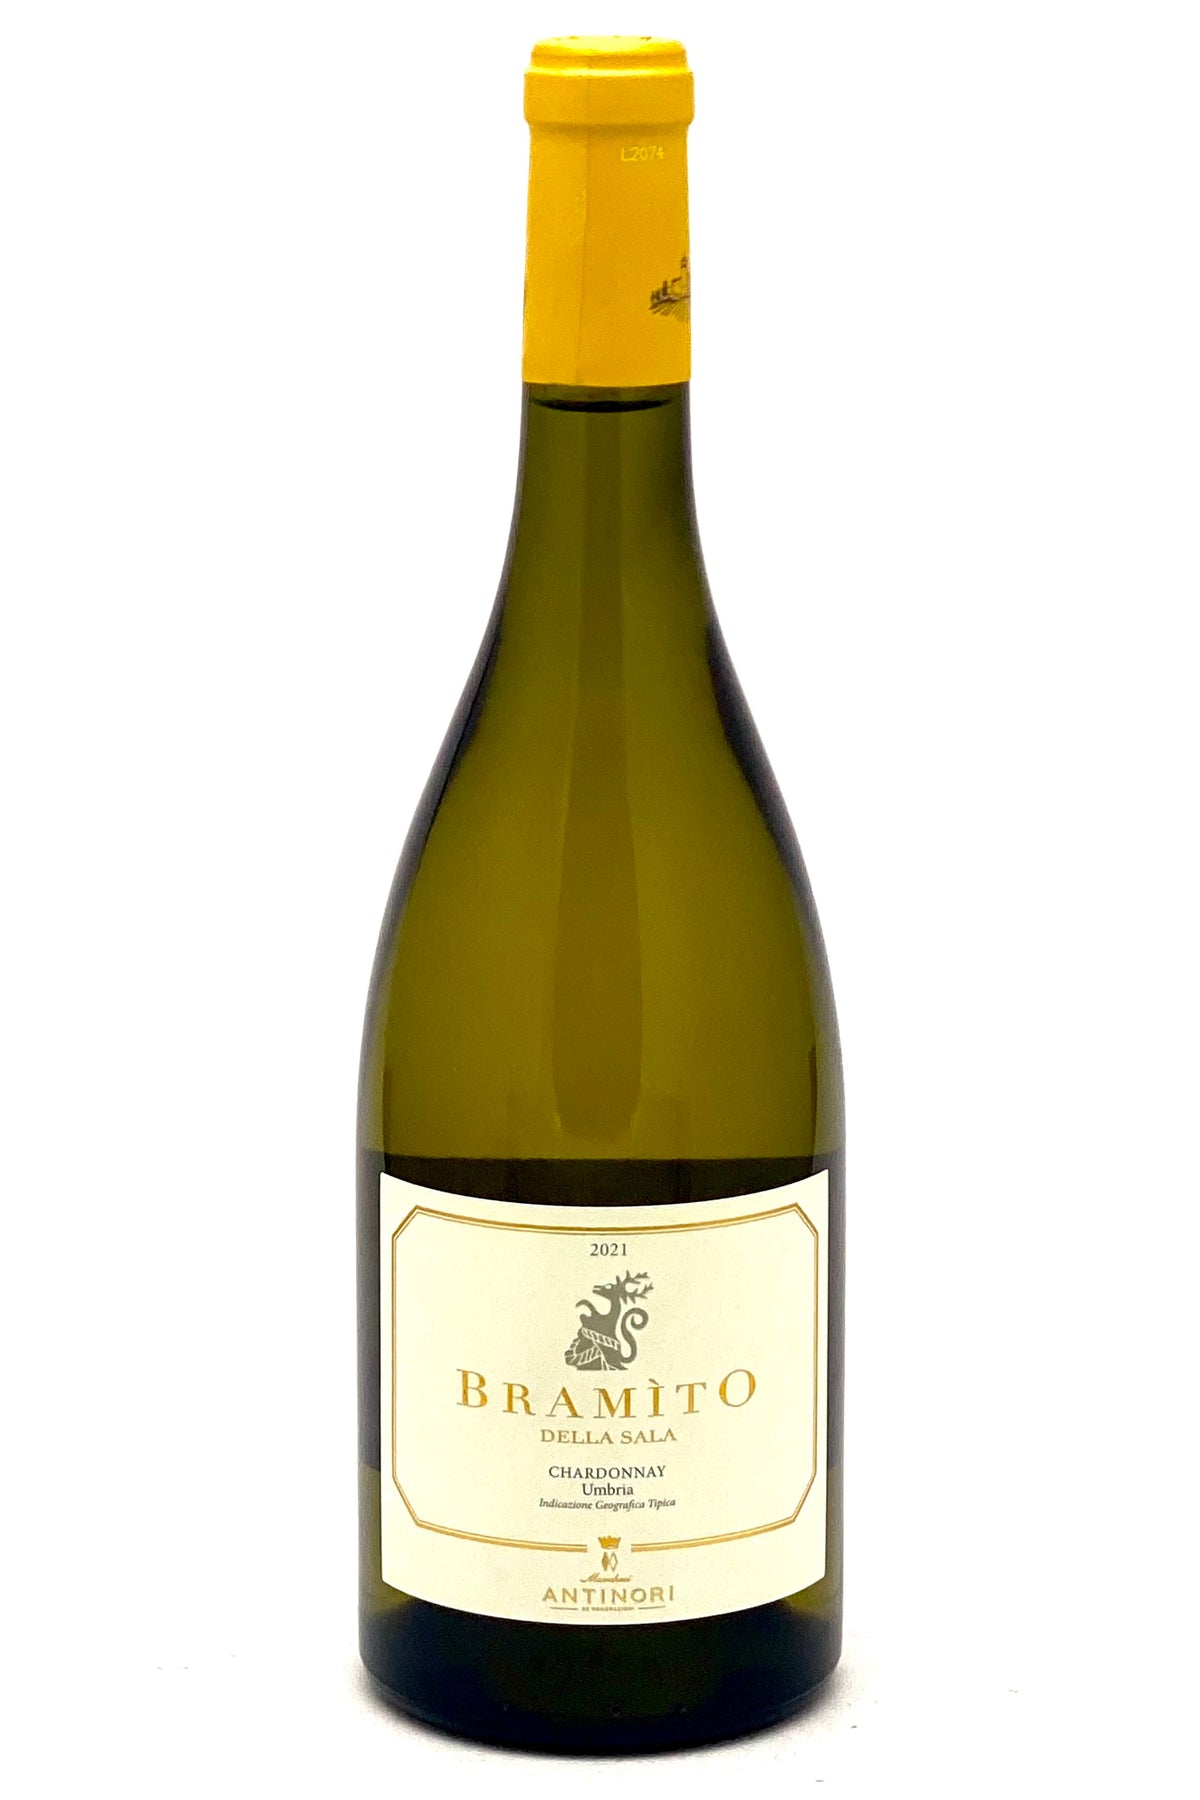 Buy Castello della Sala del Chardonnay Bramito 2021 by Online Cervo Antinori